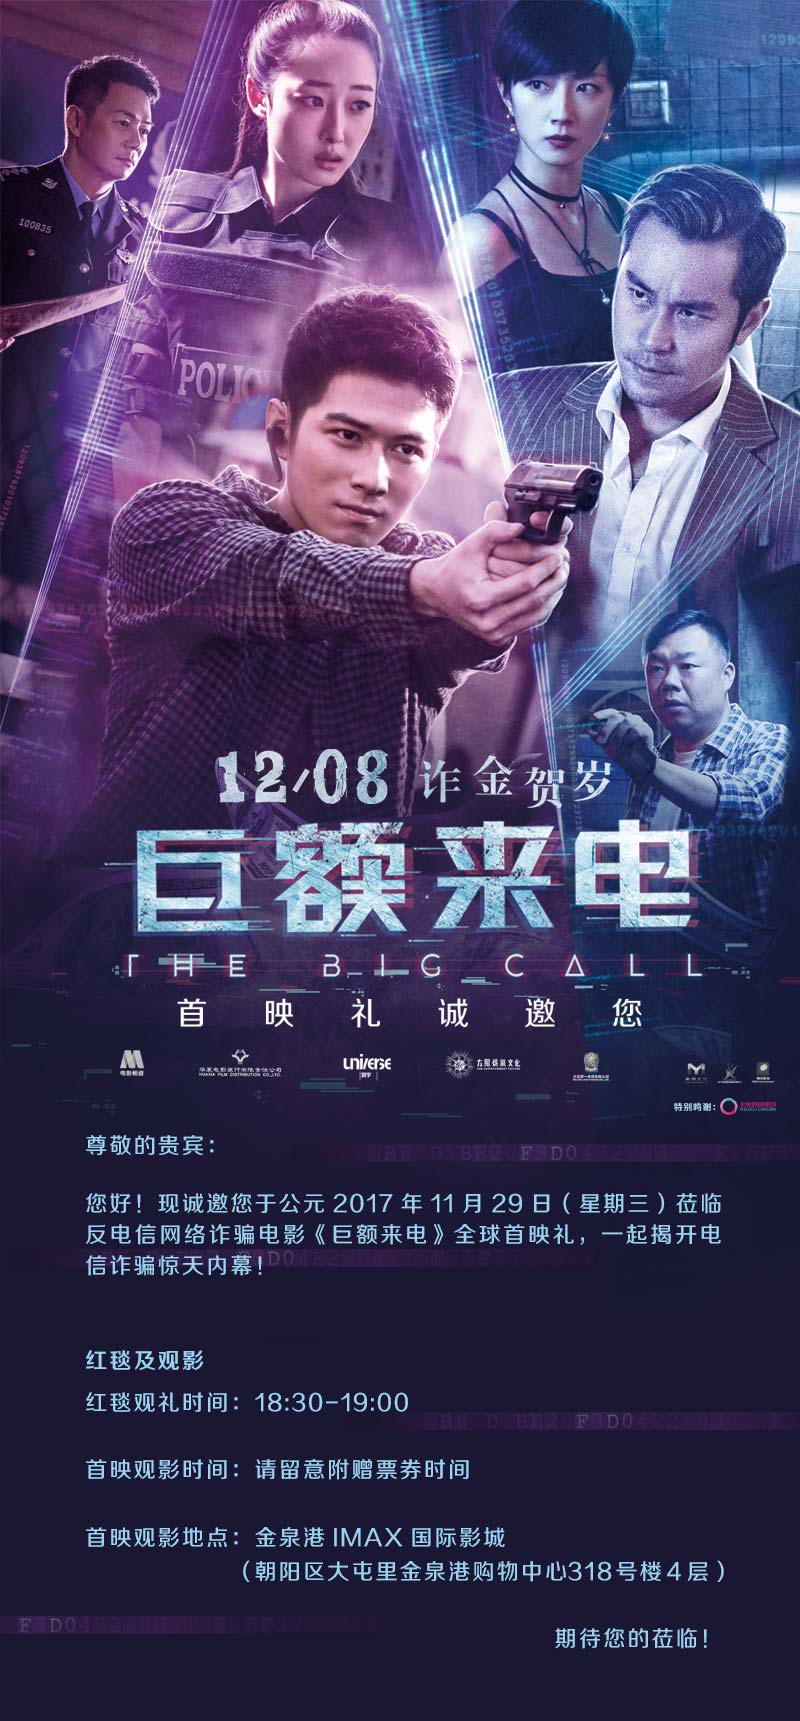 票票福利 |《巨额来电》首映礼活动招募,北京影迷看过来!